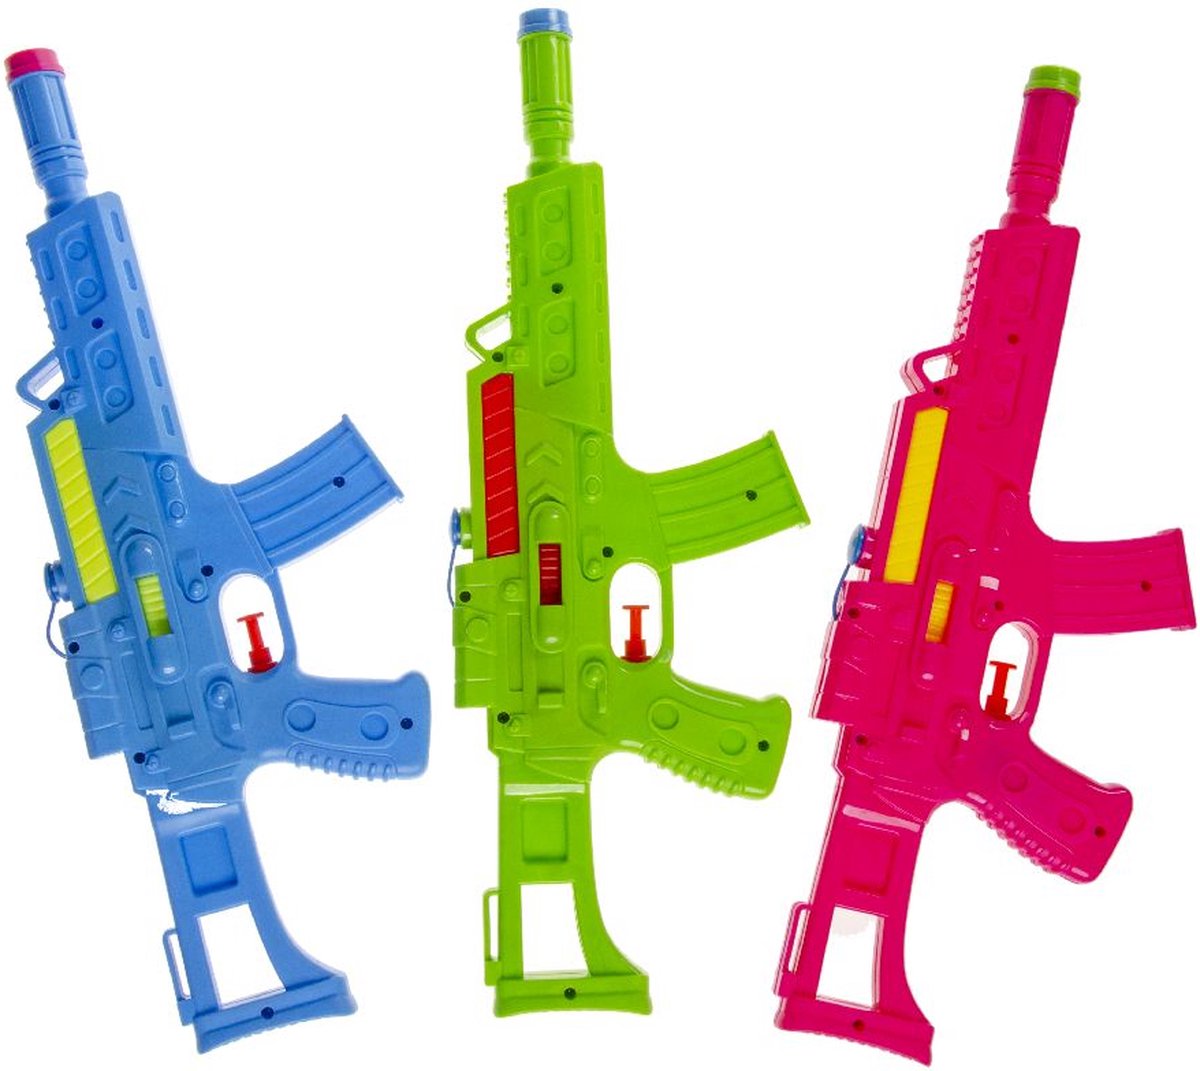 Waterpistool Aquablast - Buitenspeelgoed - Waterspeelgoed - Watergeweer - Multicolor